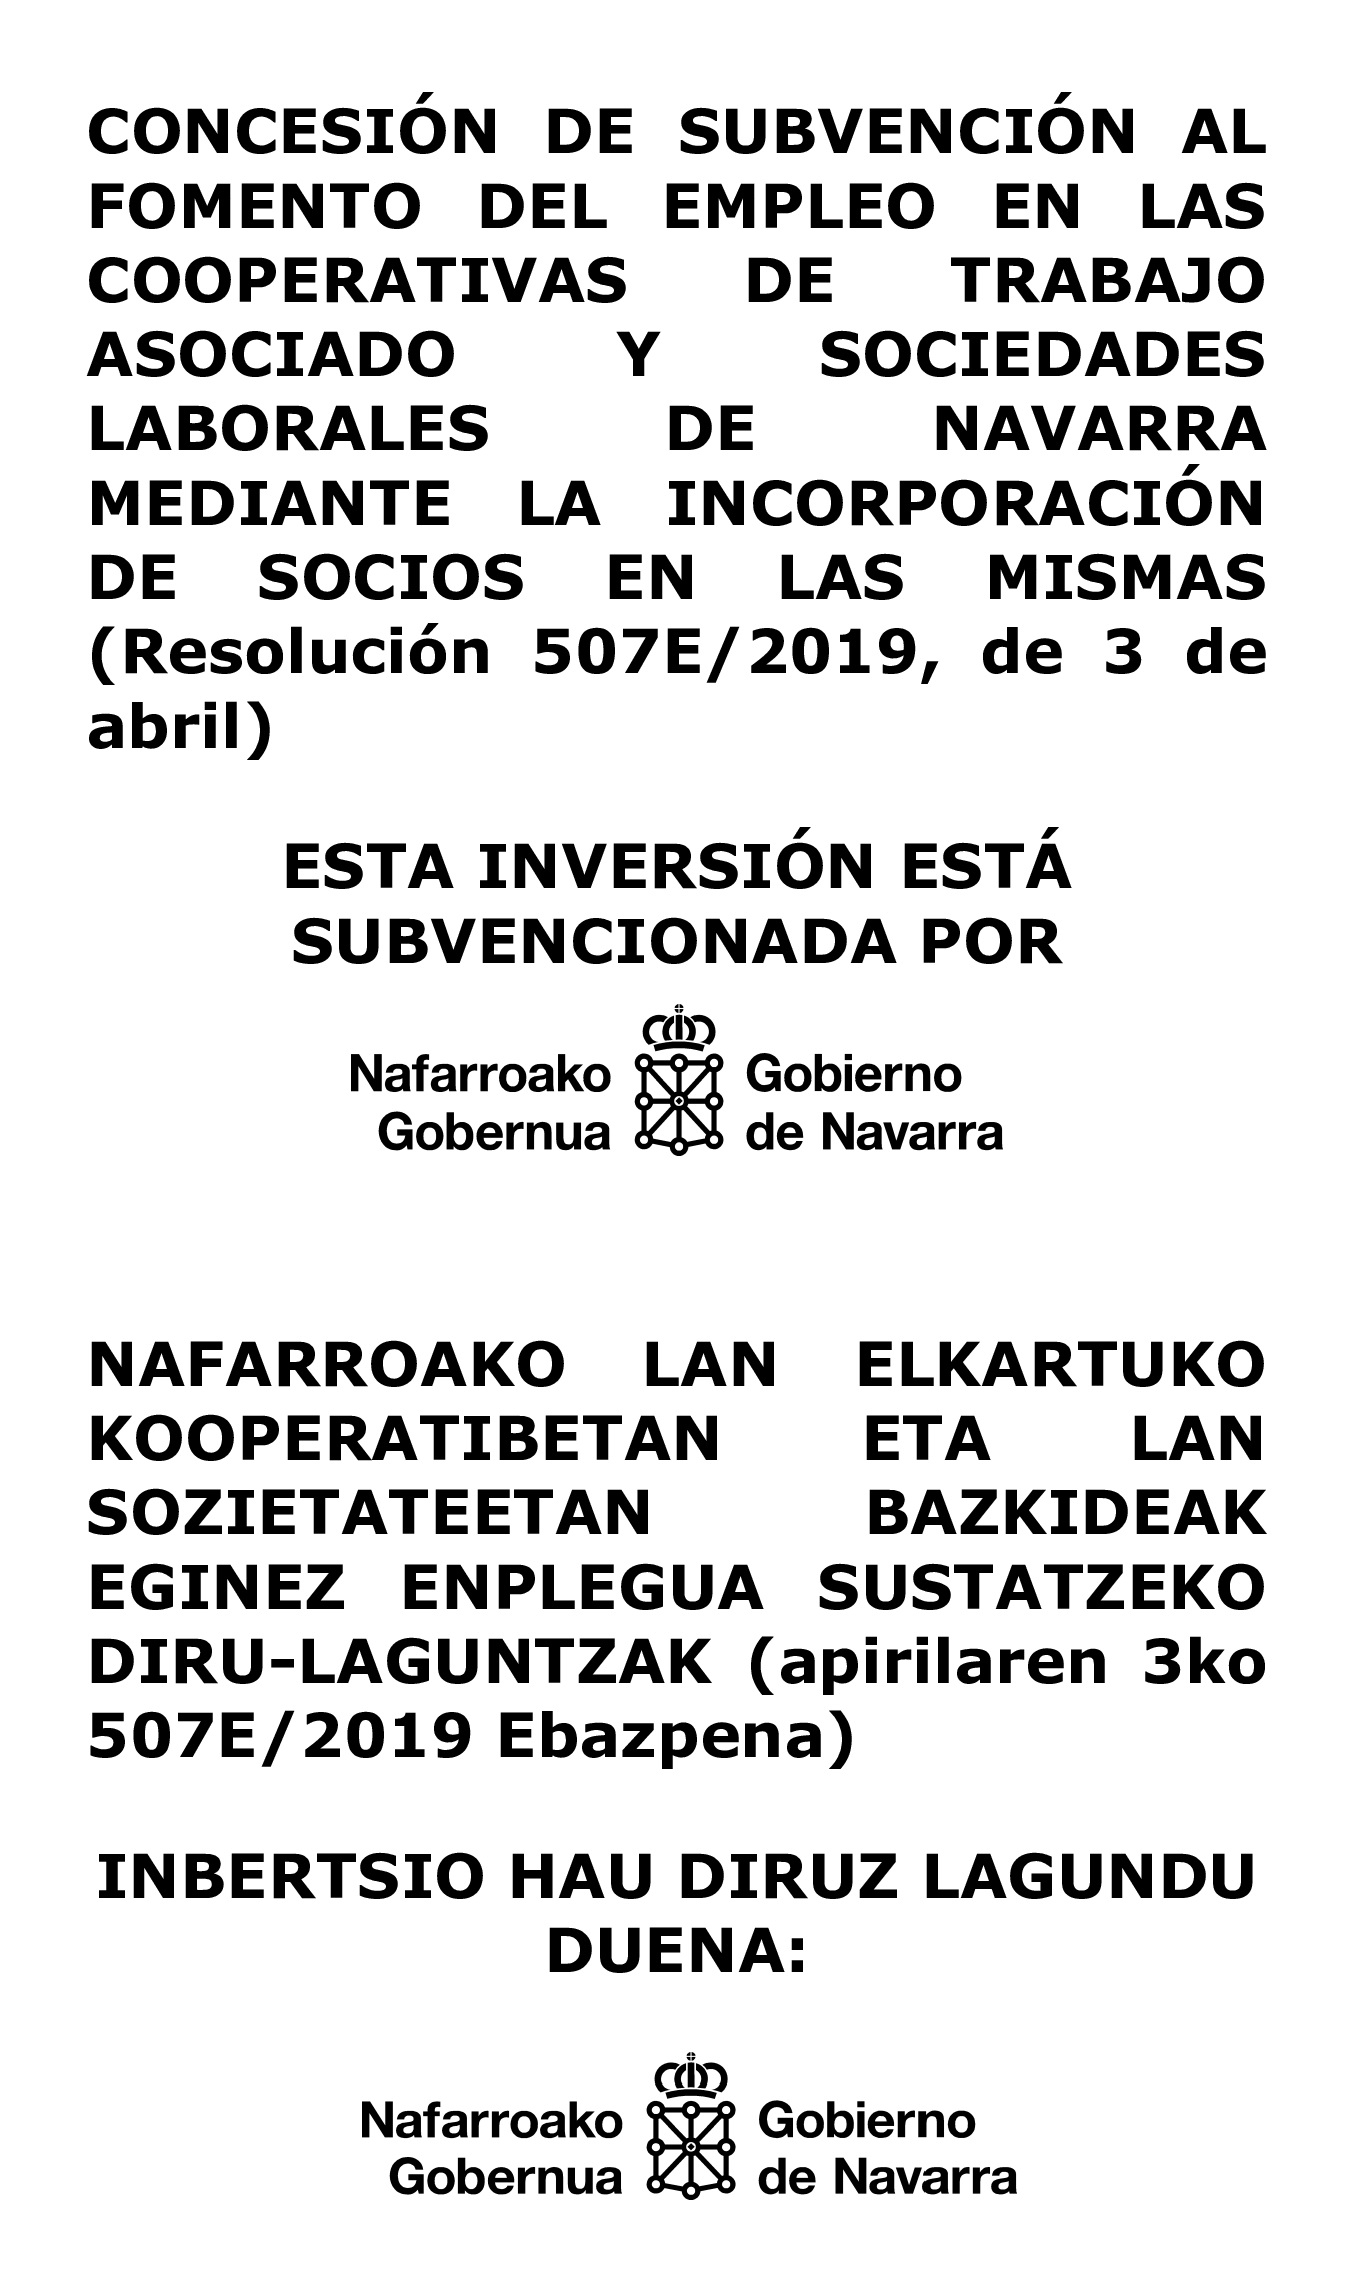 2019-Cartel-Incorporación-de-Socios-en-Cooperativas-EUSKERA-CASTELLANO-_1_ (1)